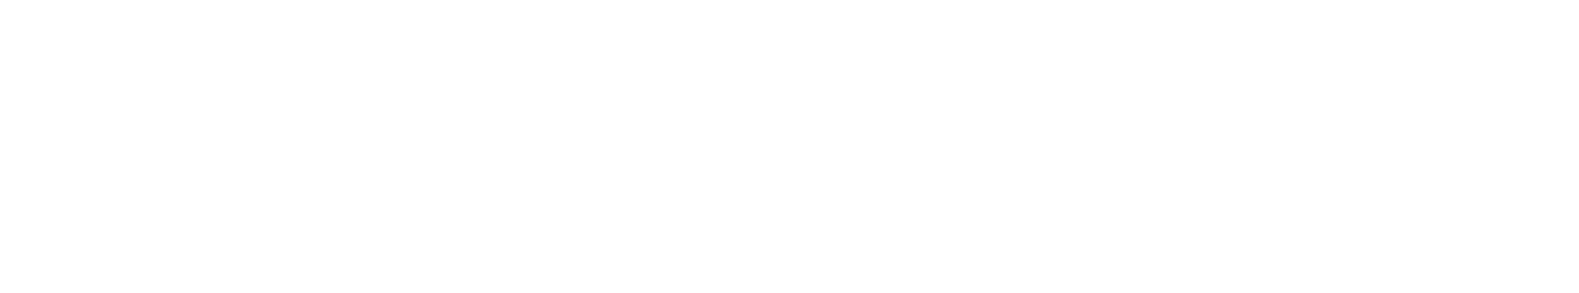 NetEase logo large for dark backgrounds (transparent PNG)